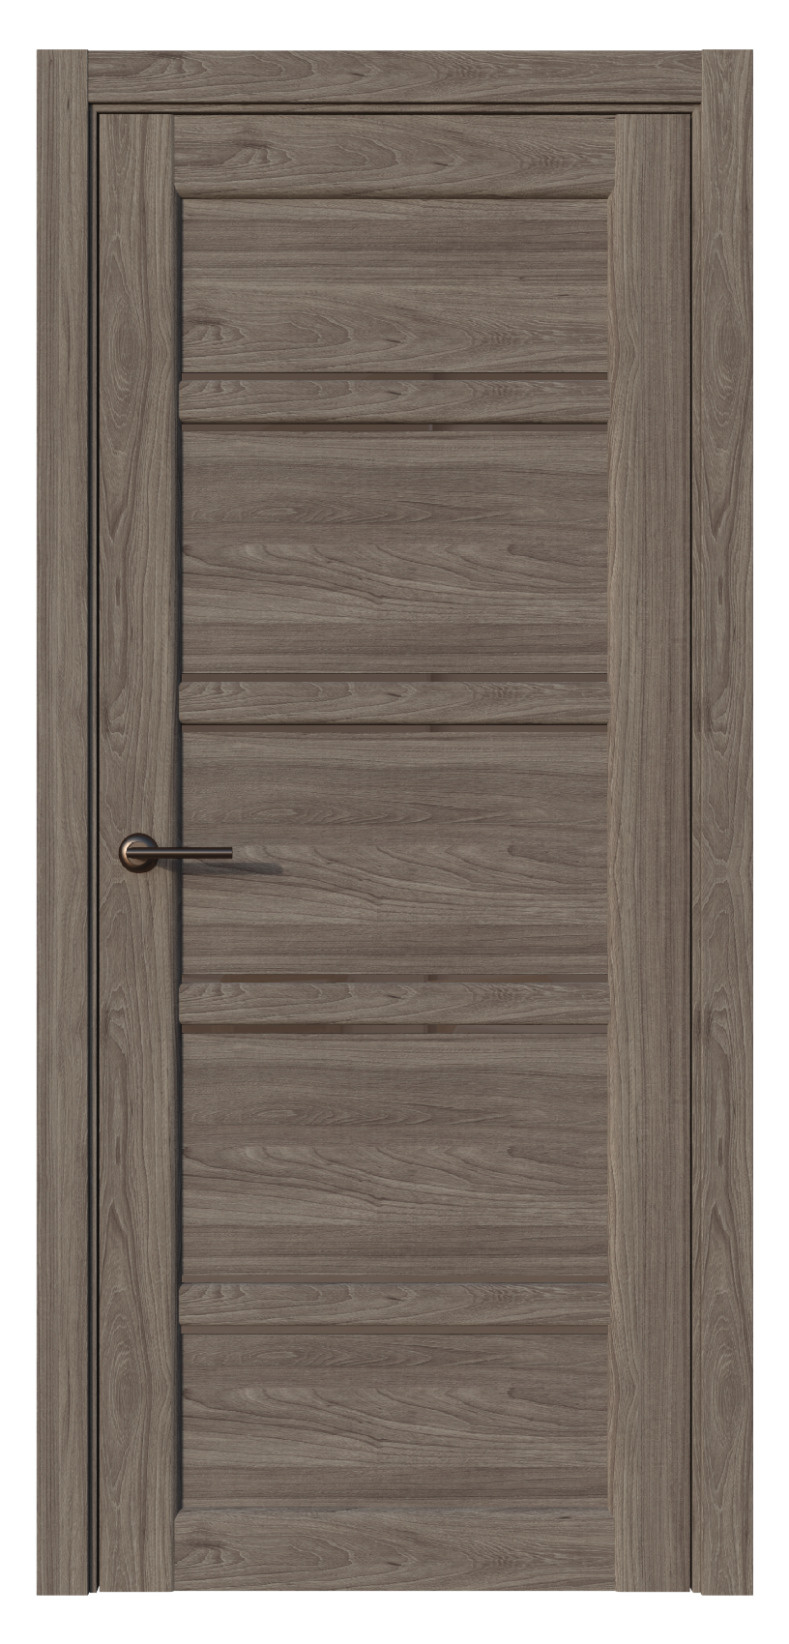 Questdoors Межкомнатная дверь QX21, арт. 17588 - фото №1